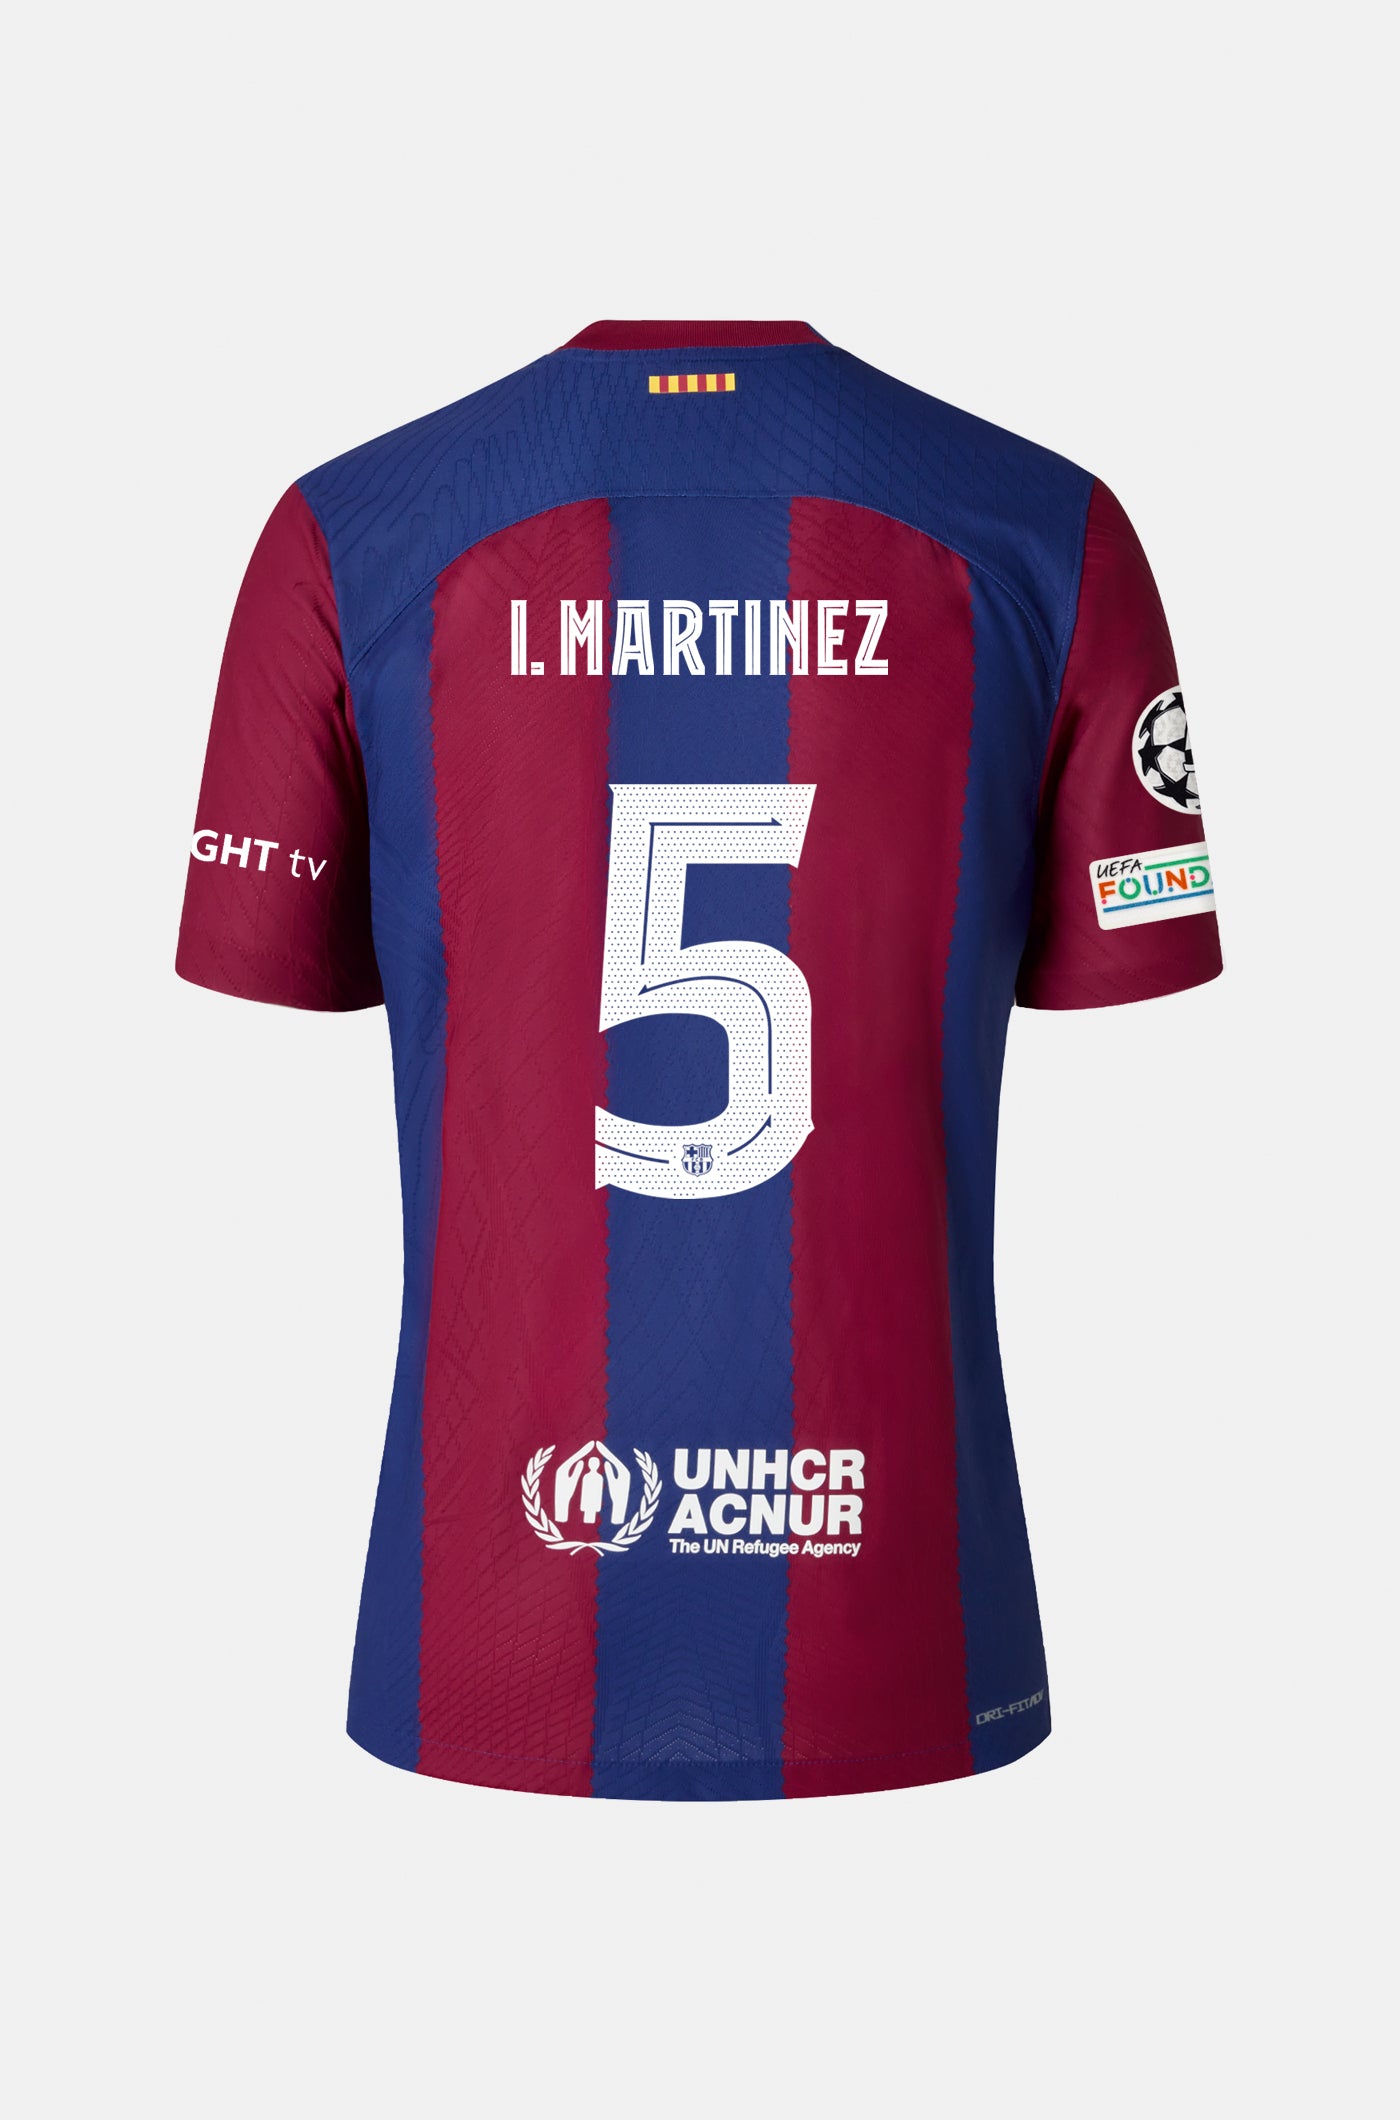 UCL FC Barcelona home shirt 23/24 – Junior - I. MARTÍNEZ